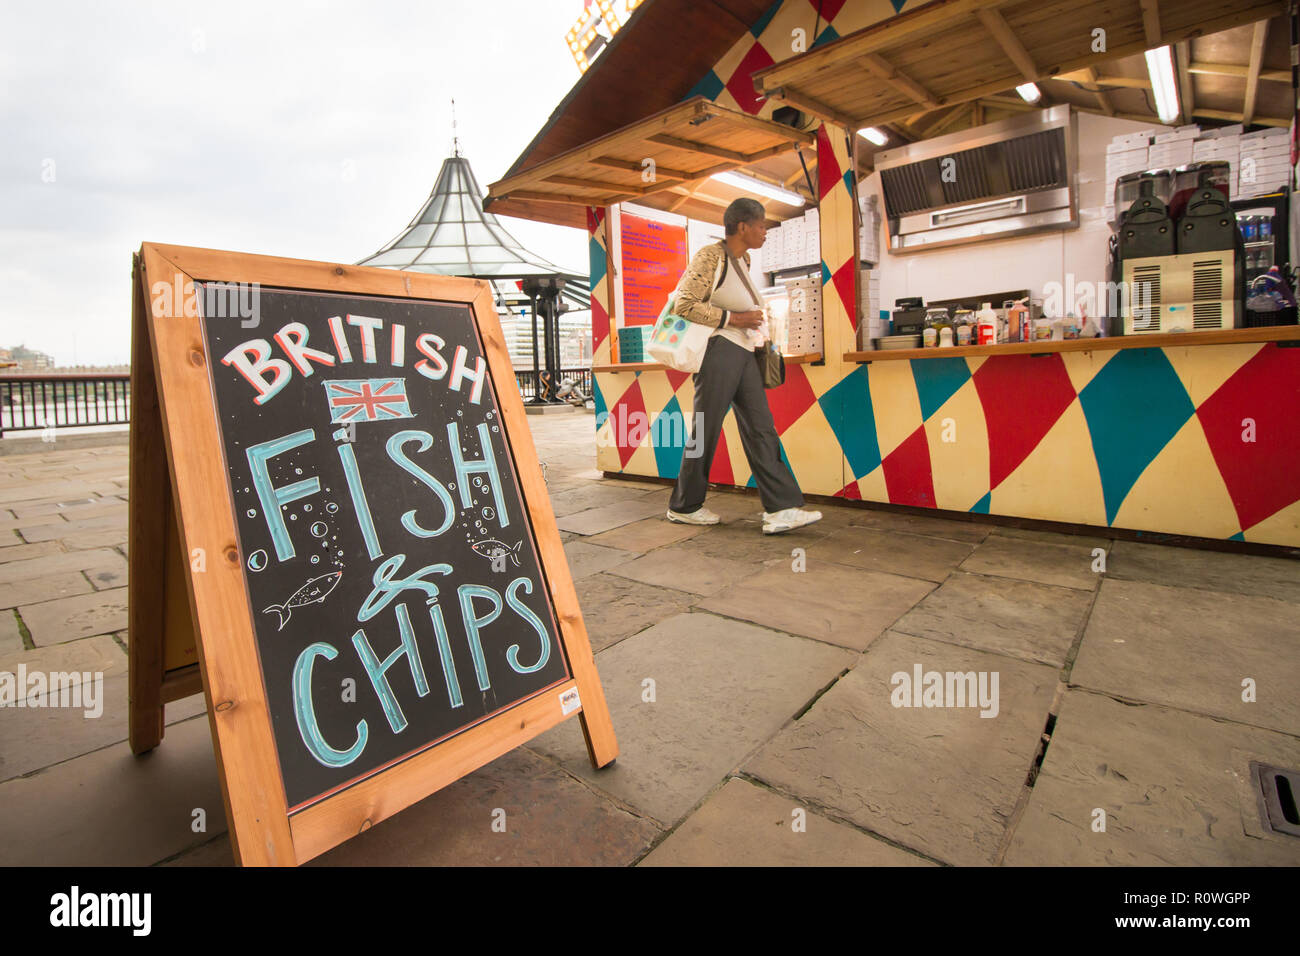 British Fish and Chips stall Stock Photo